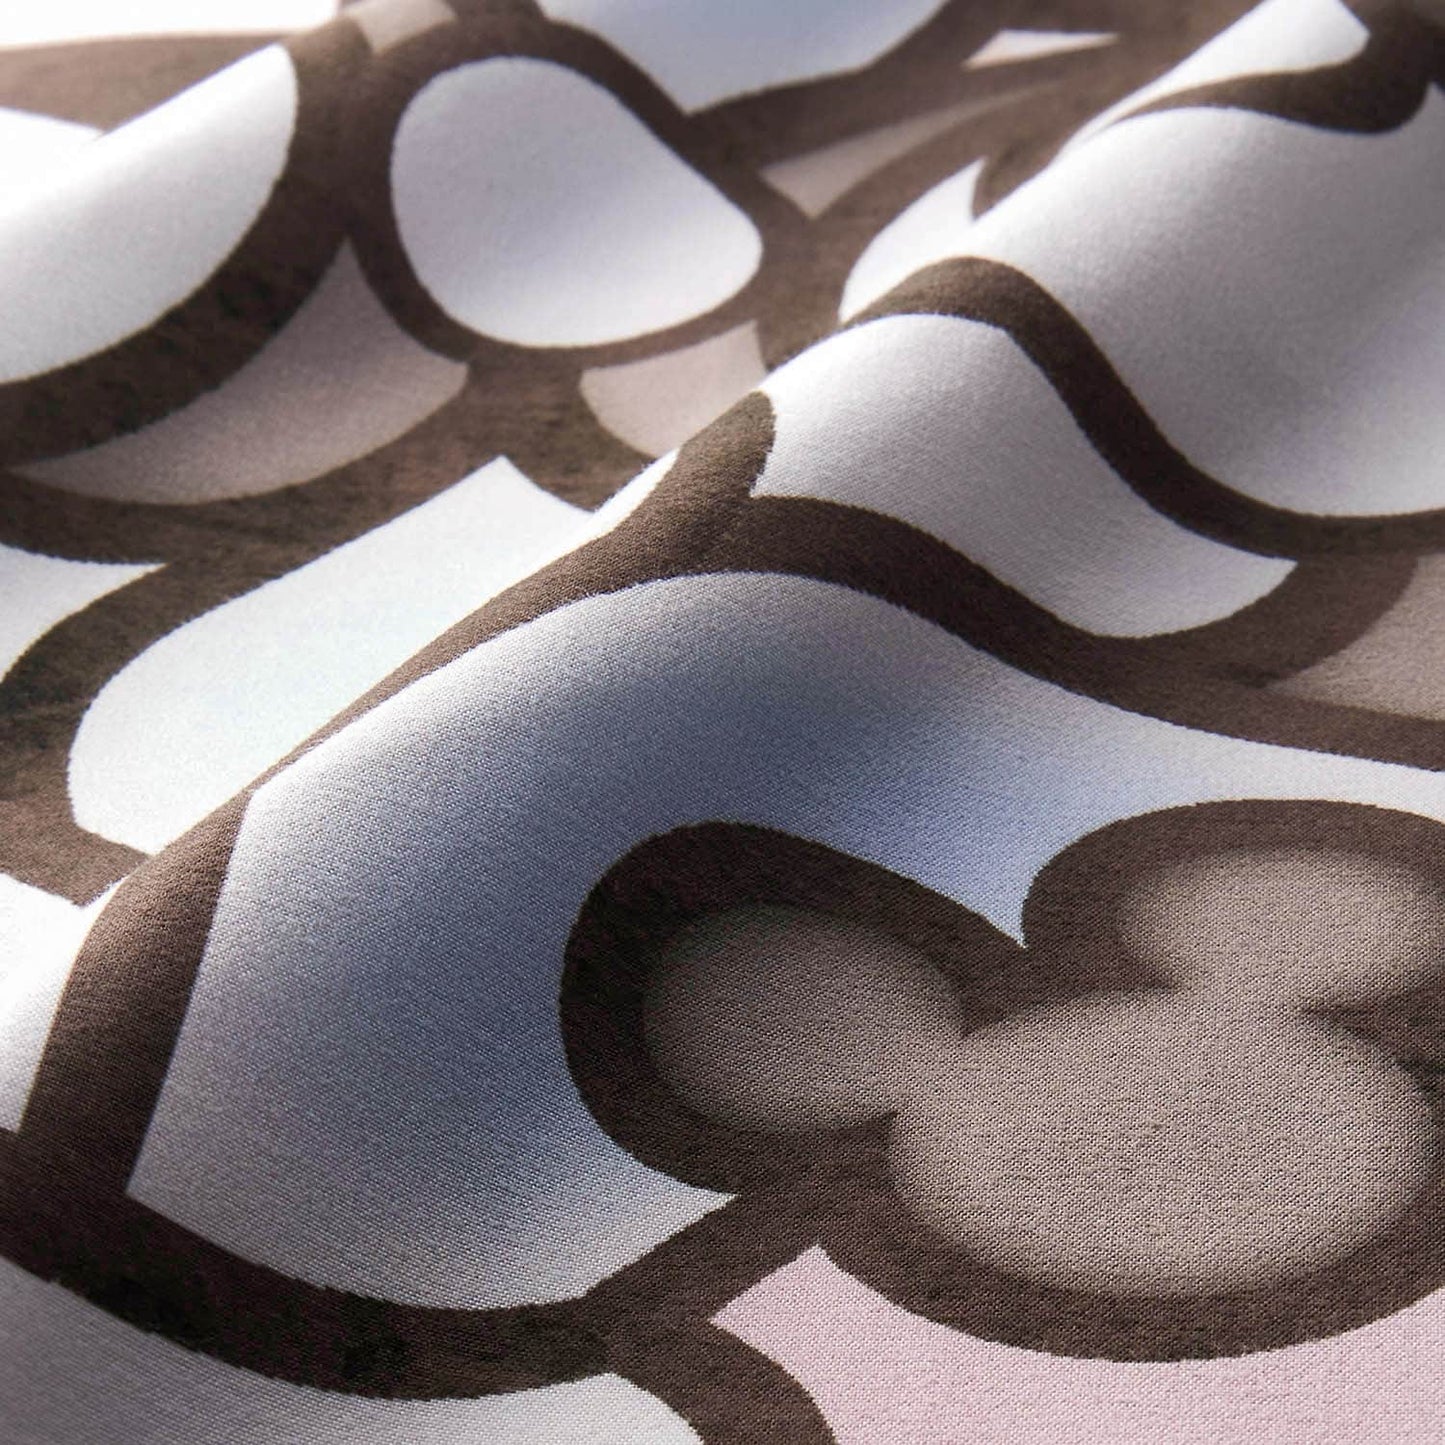 Mickey&Minnie彩色玻璃藝術床單被套3件裝(單人/雙人)